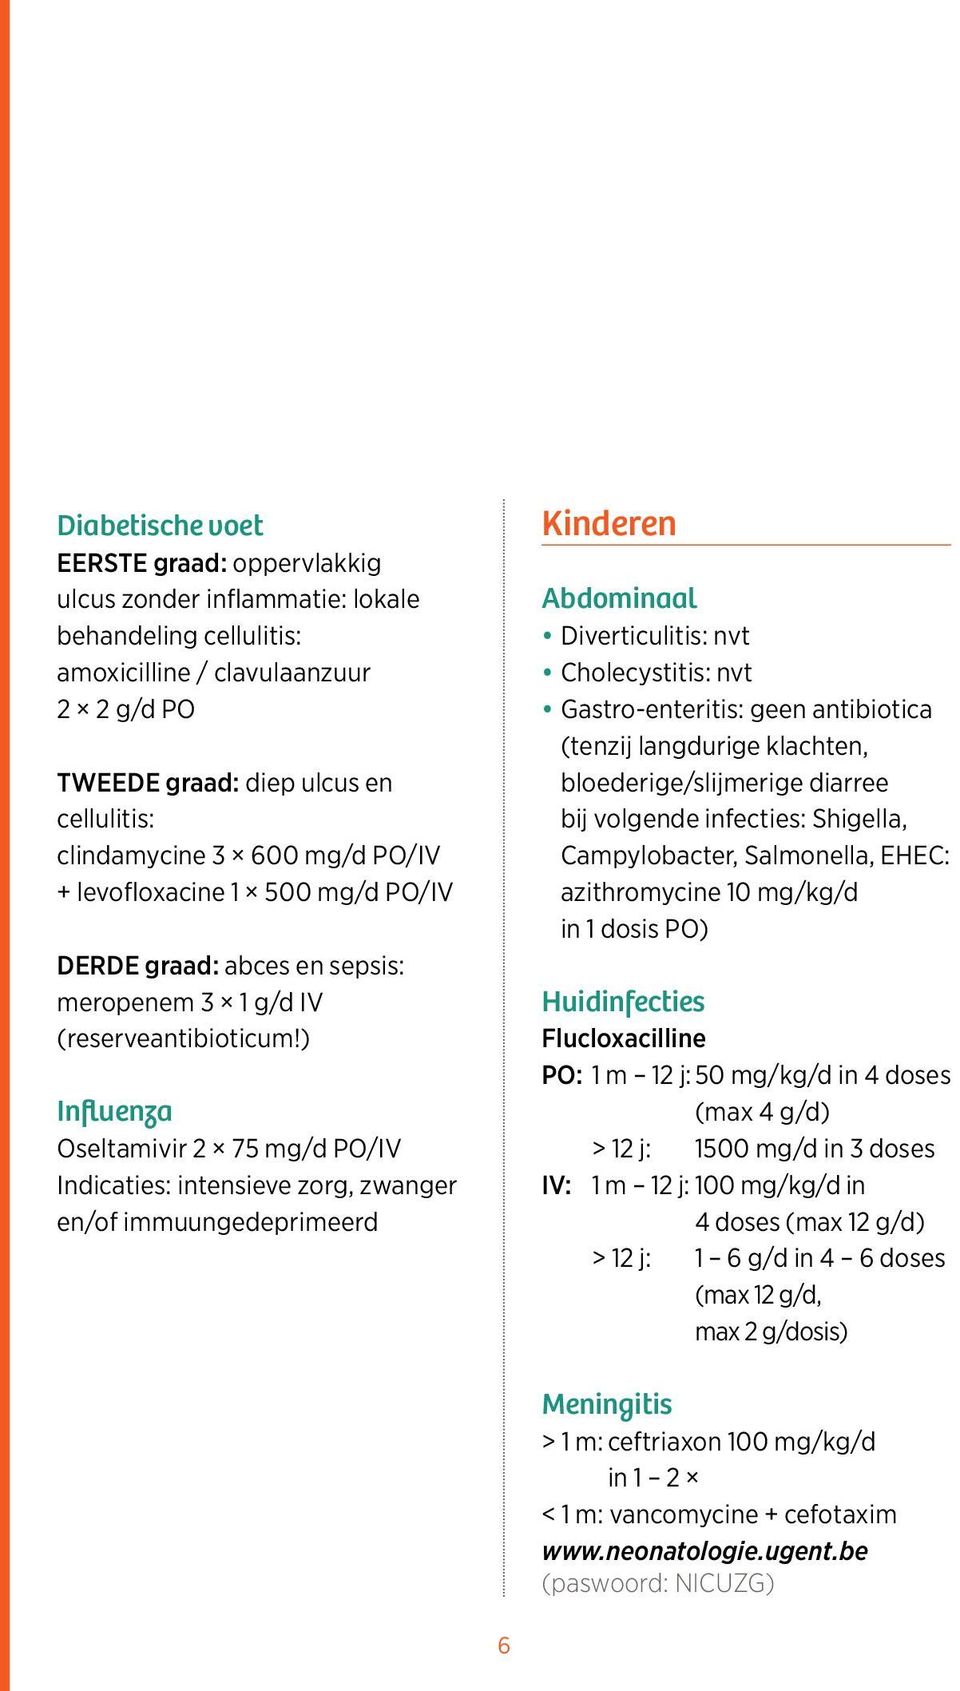 ) Influenza Oseltamivir 2 75 mg/d PO/IV Indicaties: intensieve zorg, zwanger en/of immuungedeprimeerd Kinderen Abdominaal Diverticulitis: nvt Cholecystitis: nvt Gastro-enteritis: geen antibiotica